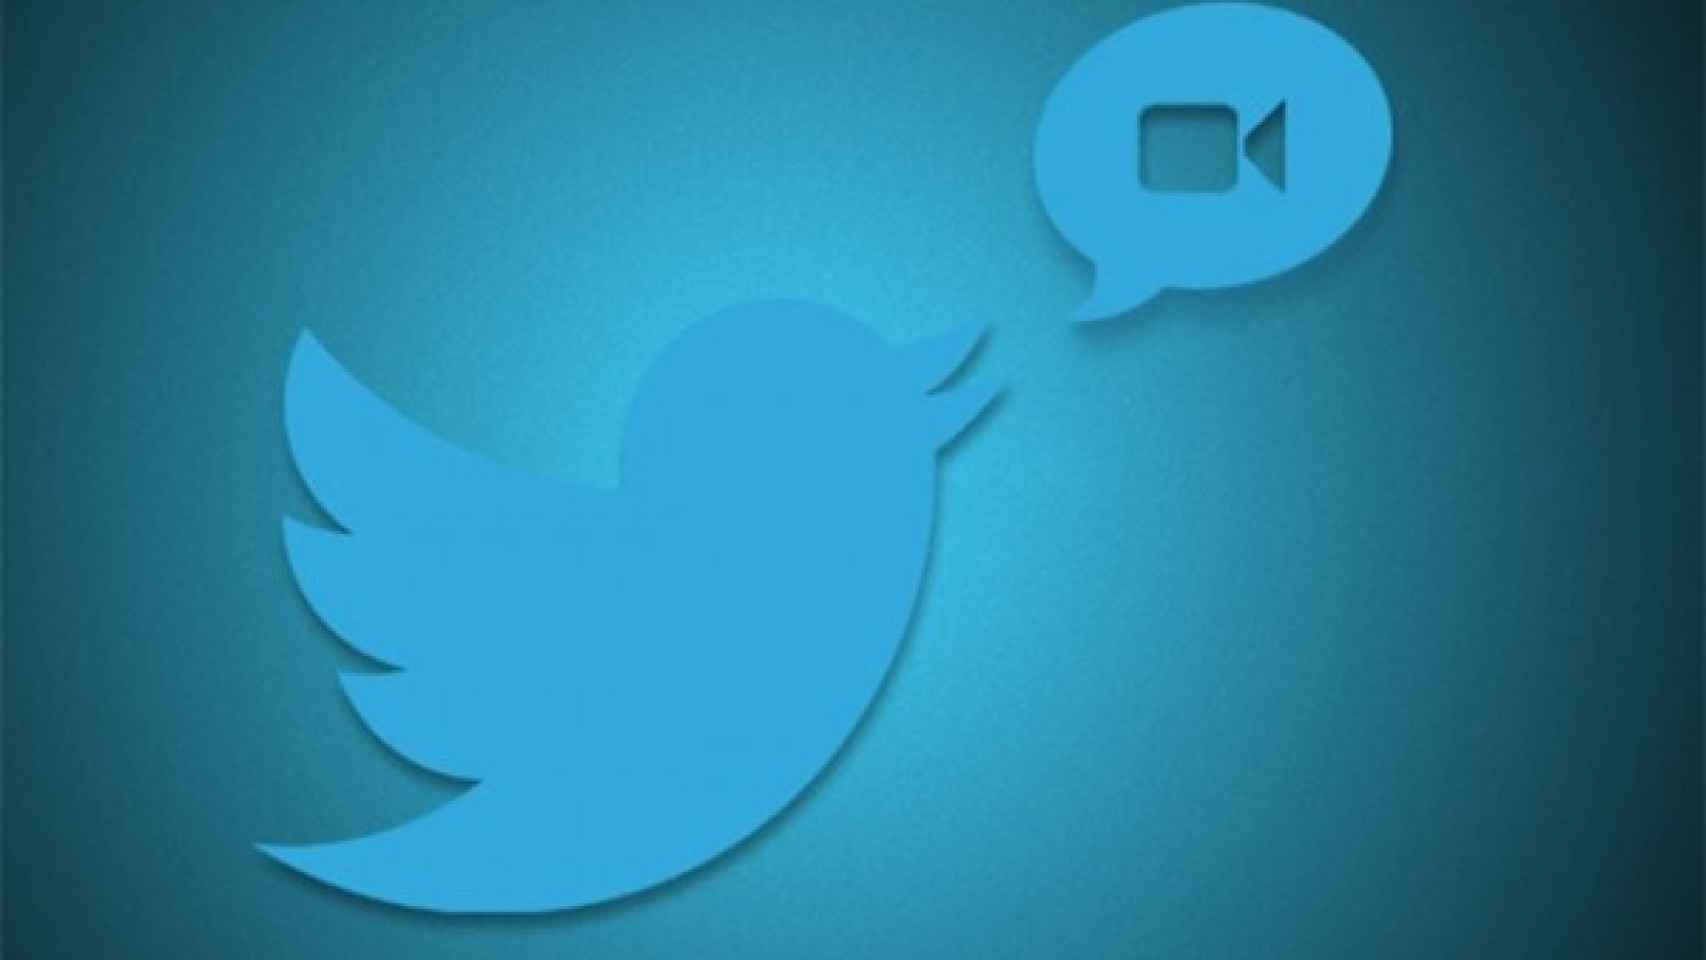 Twitter prepara novedades: vídeos nativos, timelines personalizados y más